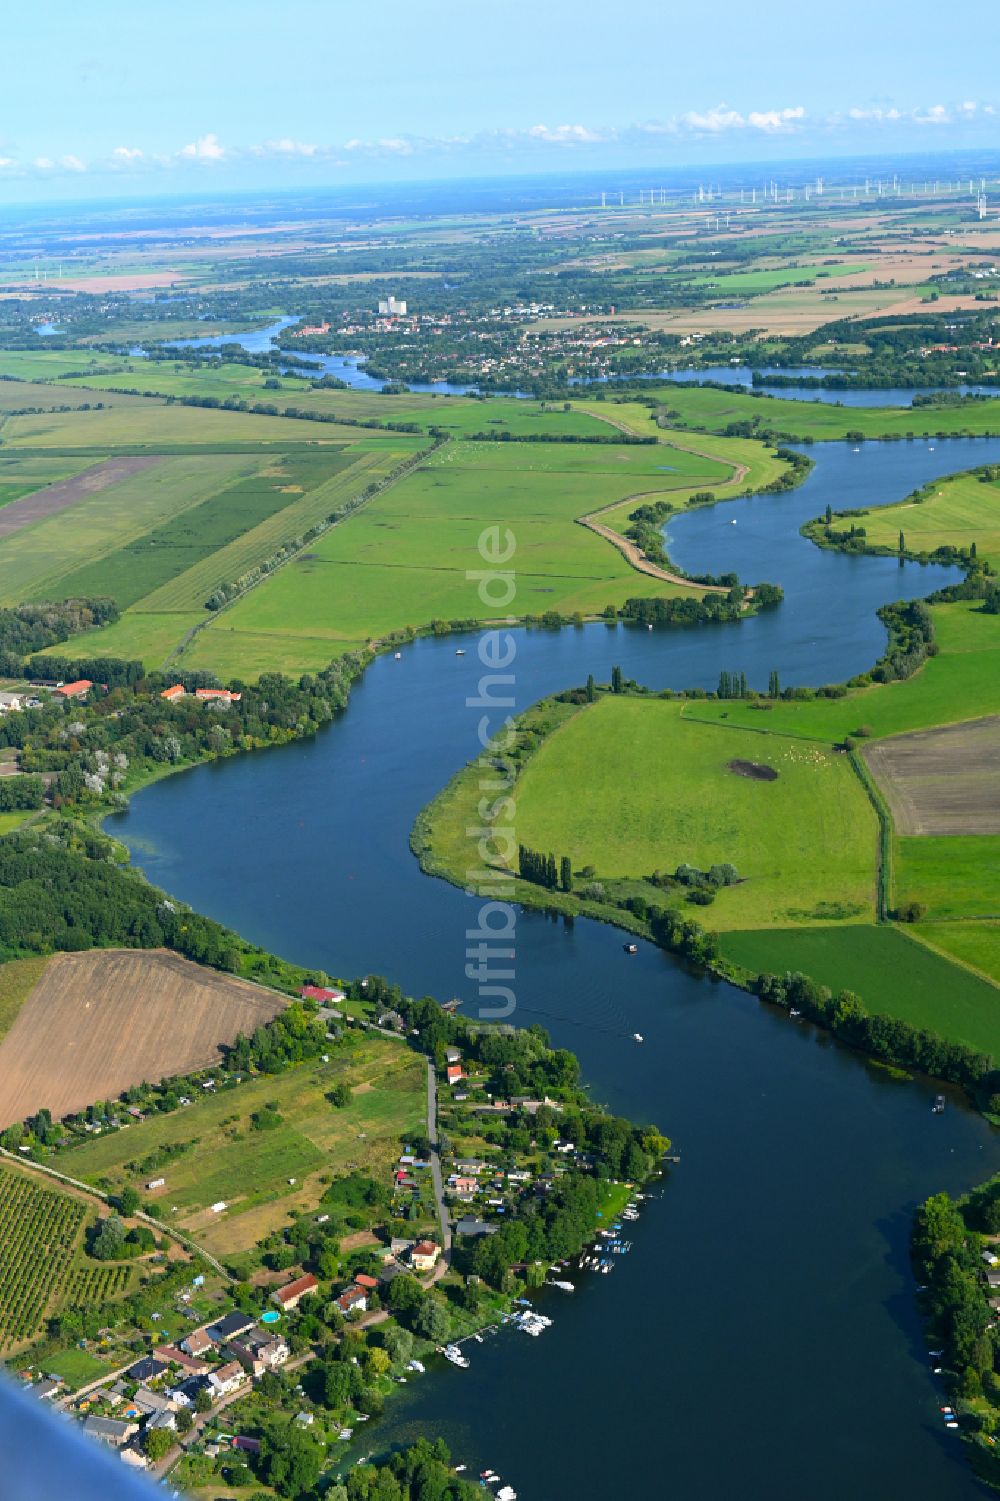 Töplitz aus der Vogelperspektive: Seen- Kette und Uferbereiche des Sees Havel in Töplitz im Bundesland Brandenburg, Deutschland